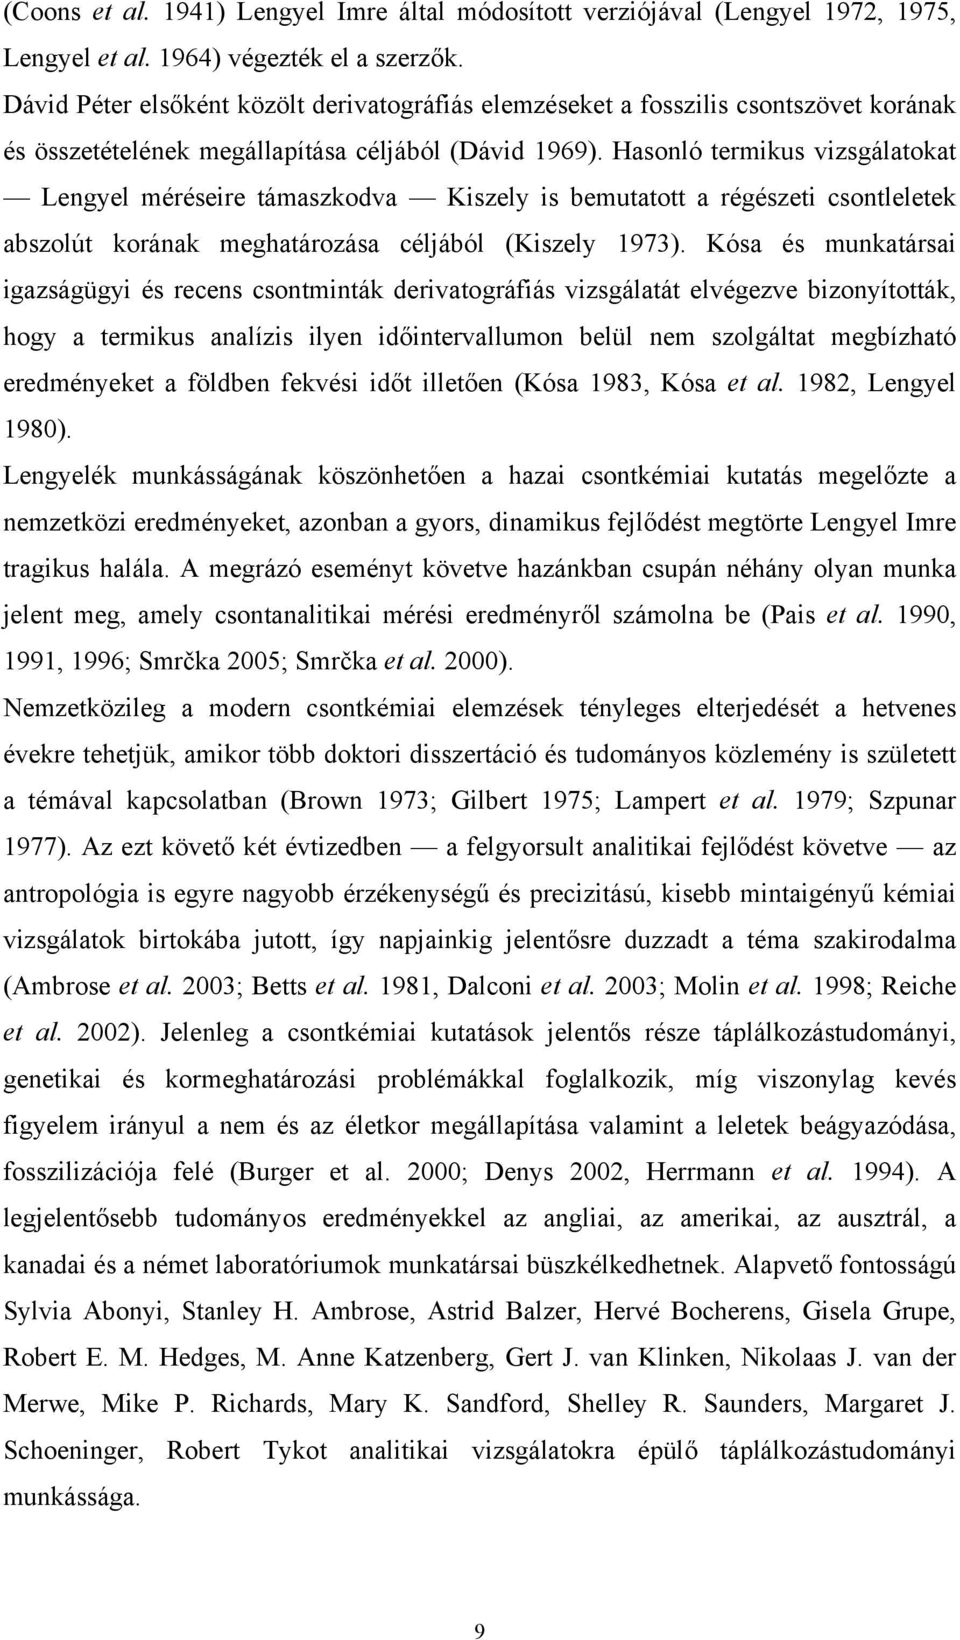 Hasonló termikus vizsgálatokat Lengyel méréseire támaszkodva Kiszely is bemutatott a régészeti csontleletek abszolút korának meghatározása céljából (Kiszely 1973).